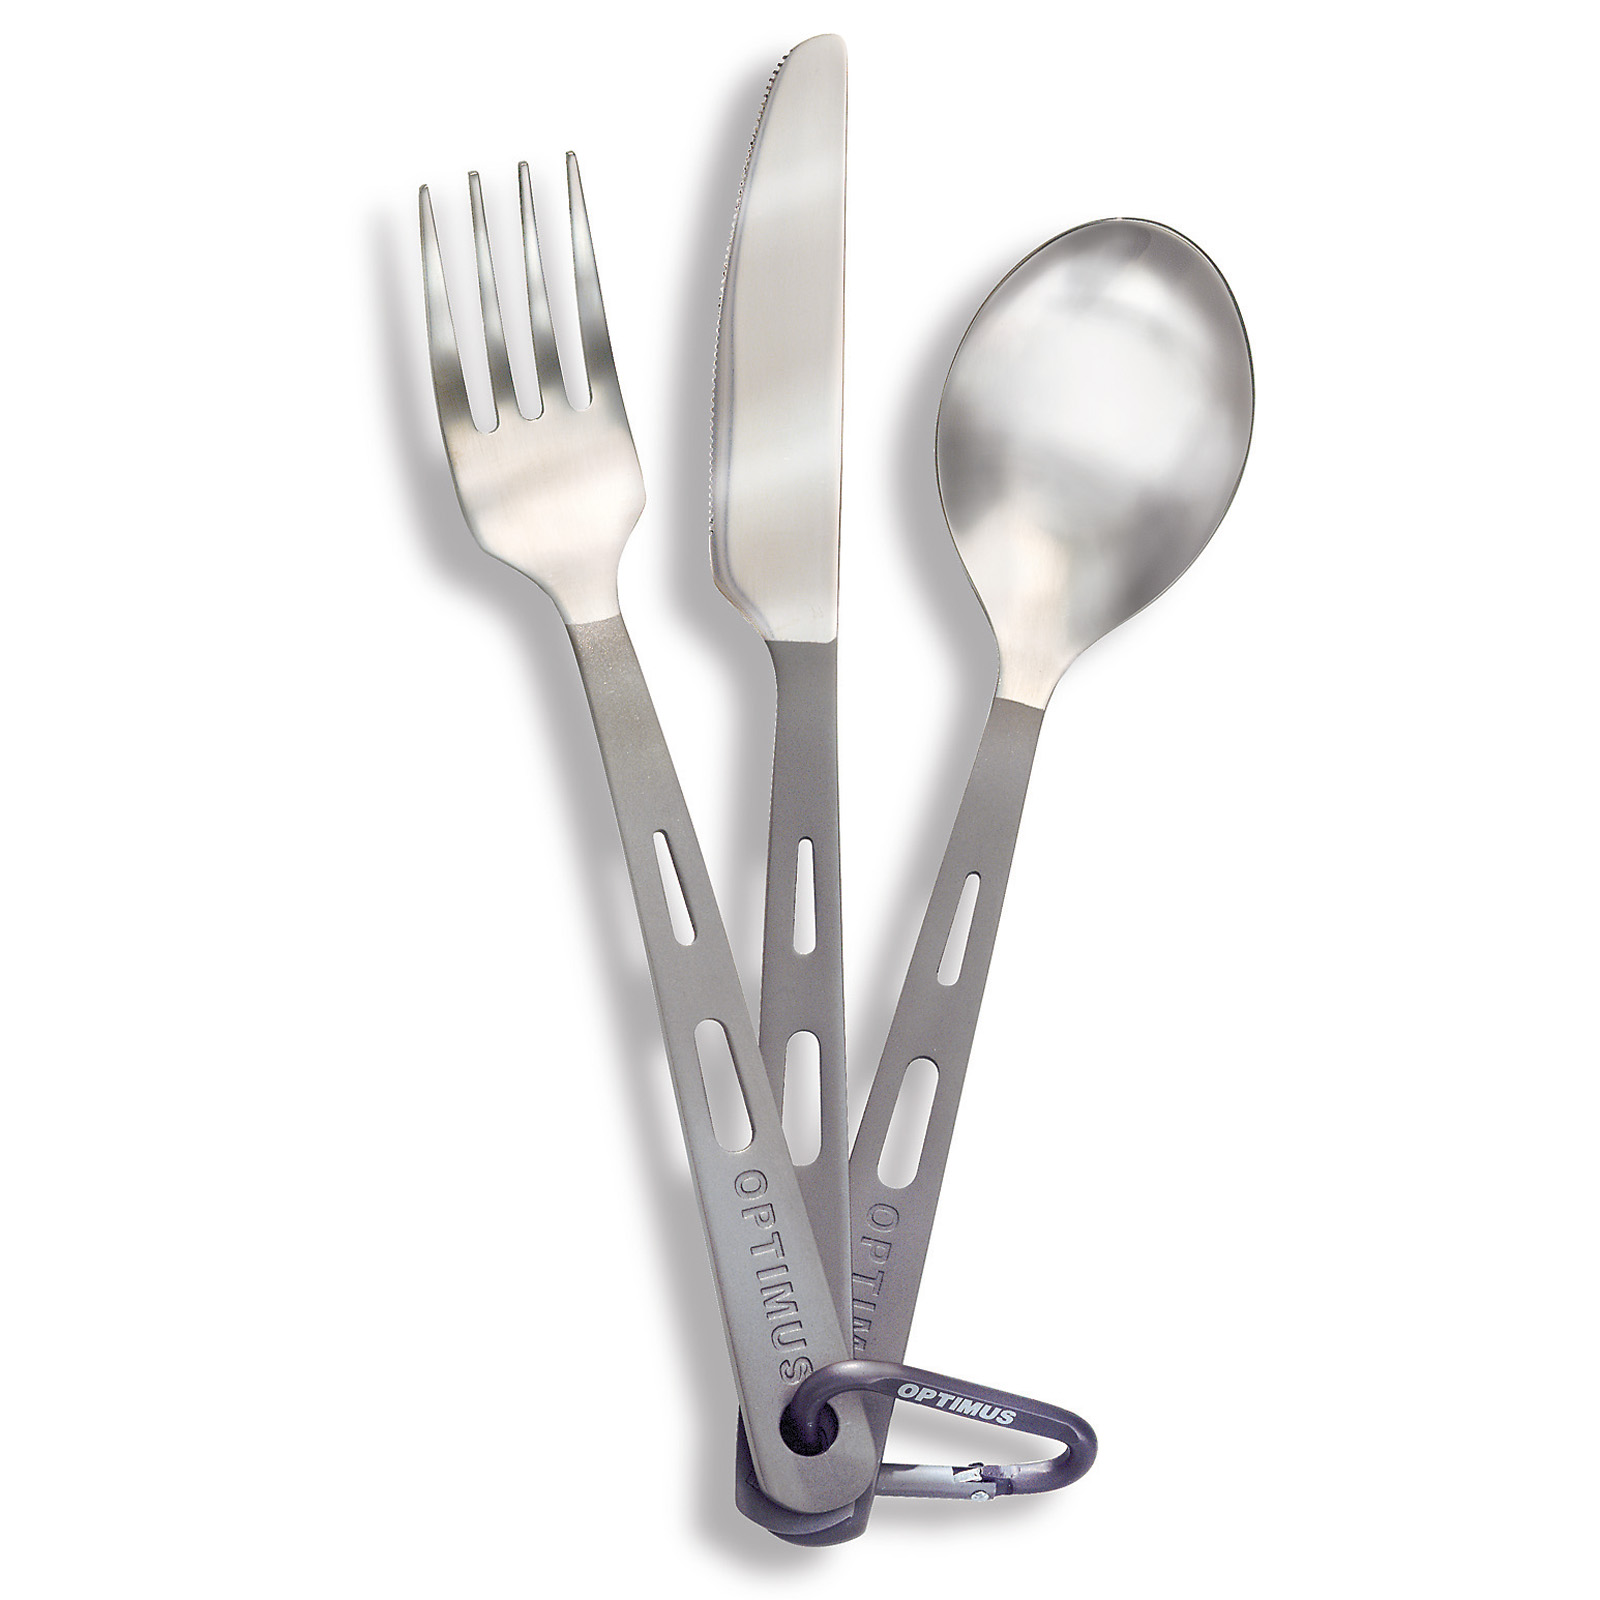 Image of Optimus Titanium 3-Piece Cutlery Set